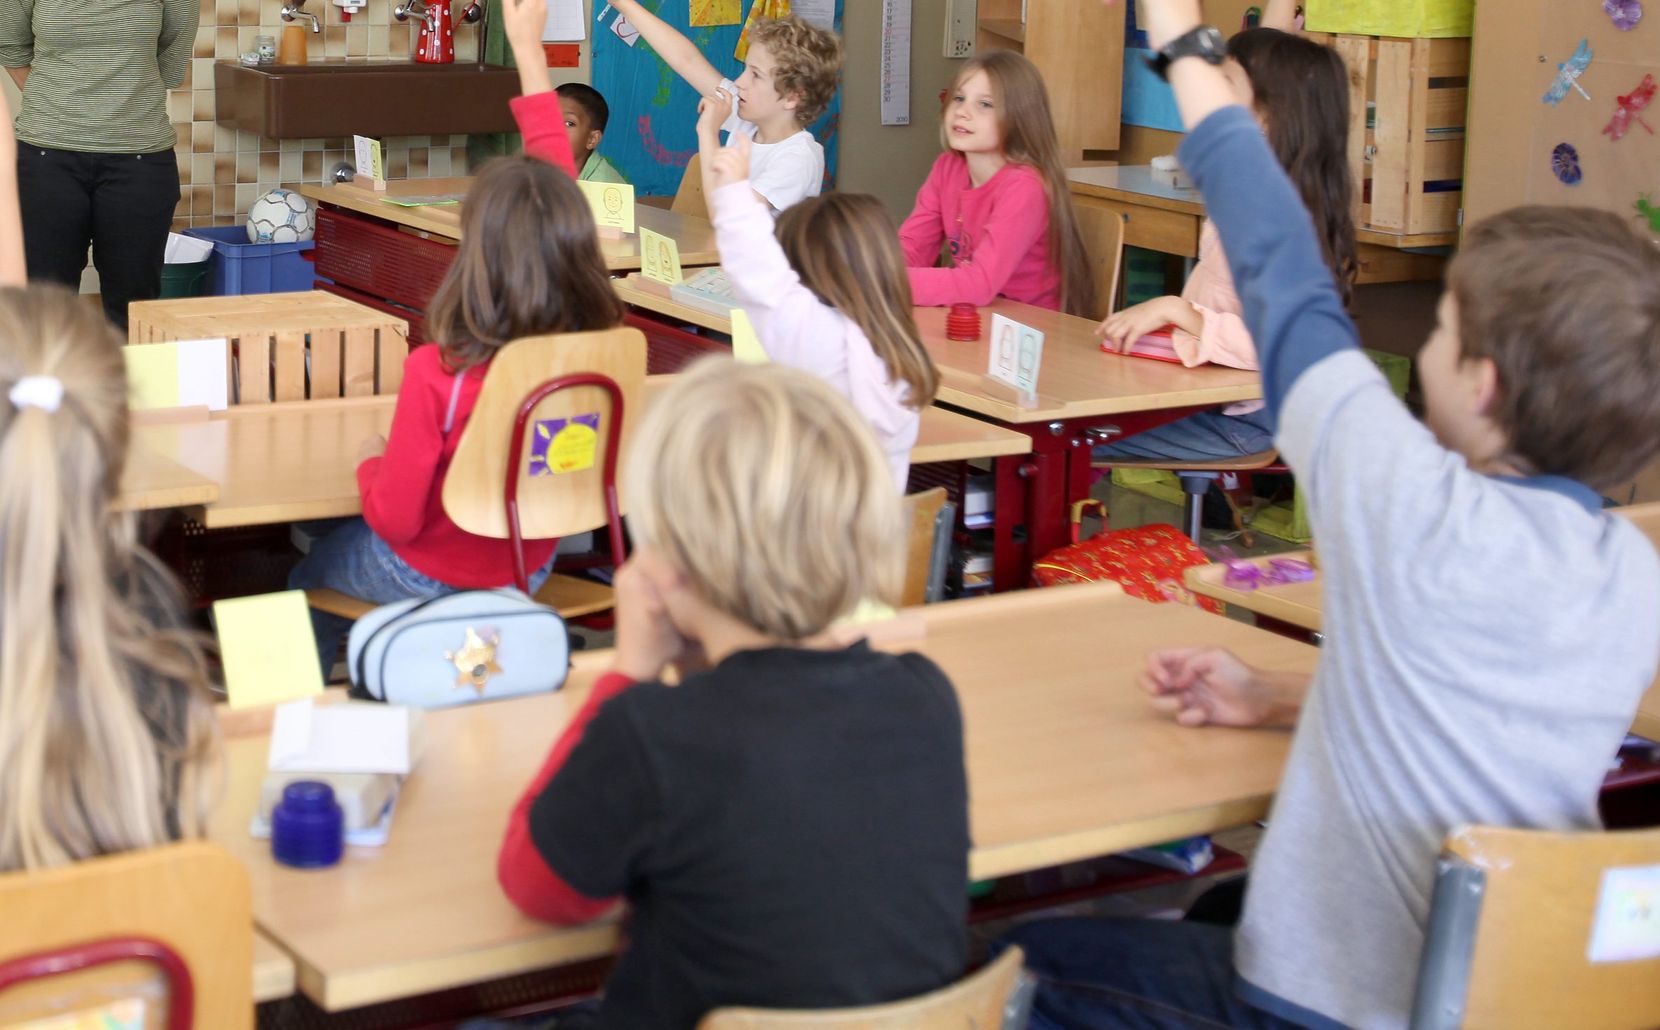 Schulklasse in Wald am 23. Juni 2010 zum Thema integrative Schule – Wald praktiziert dies schon seit zehn Jahren (mit zwei Lehrerinnen sowie einer Heilpädagogin In Teilzeit). Foto: Gesa Lüchinger